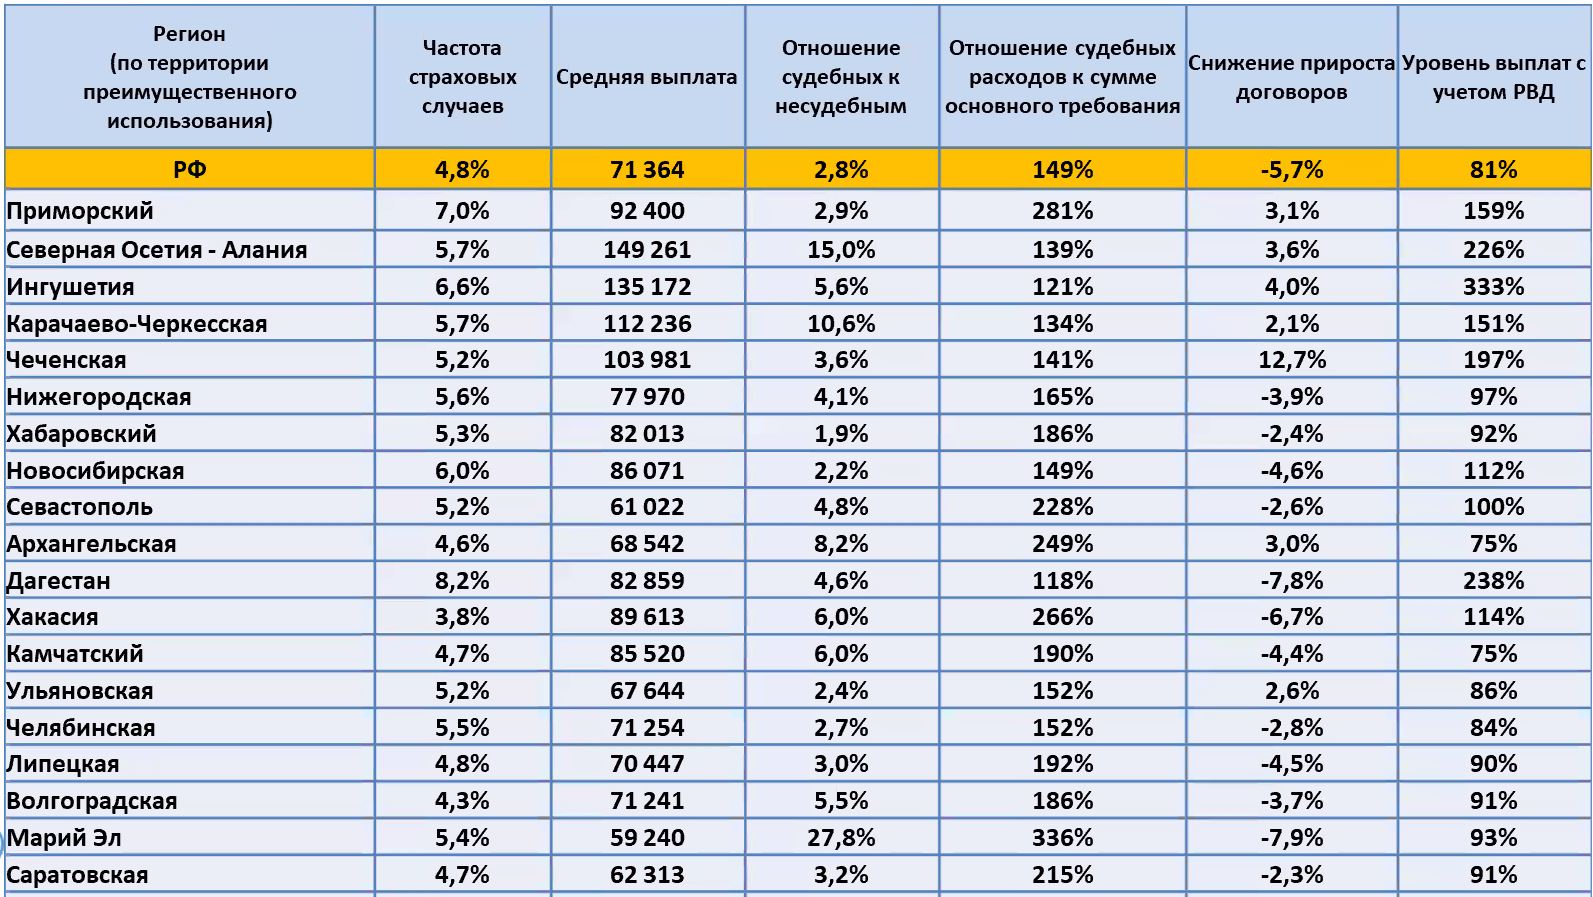 Страховые мошенничества в России: итоги года